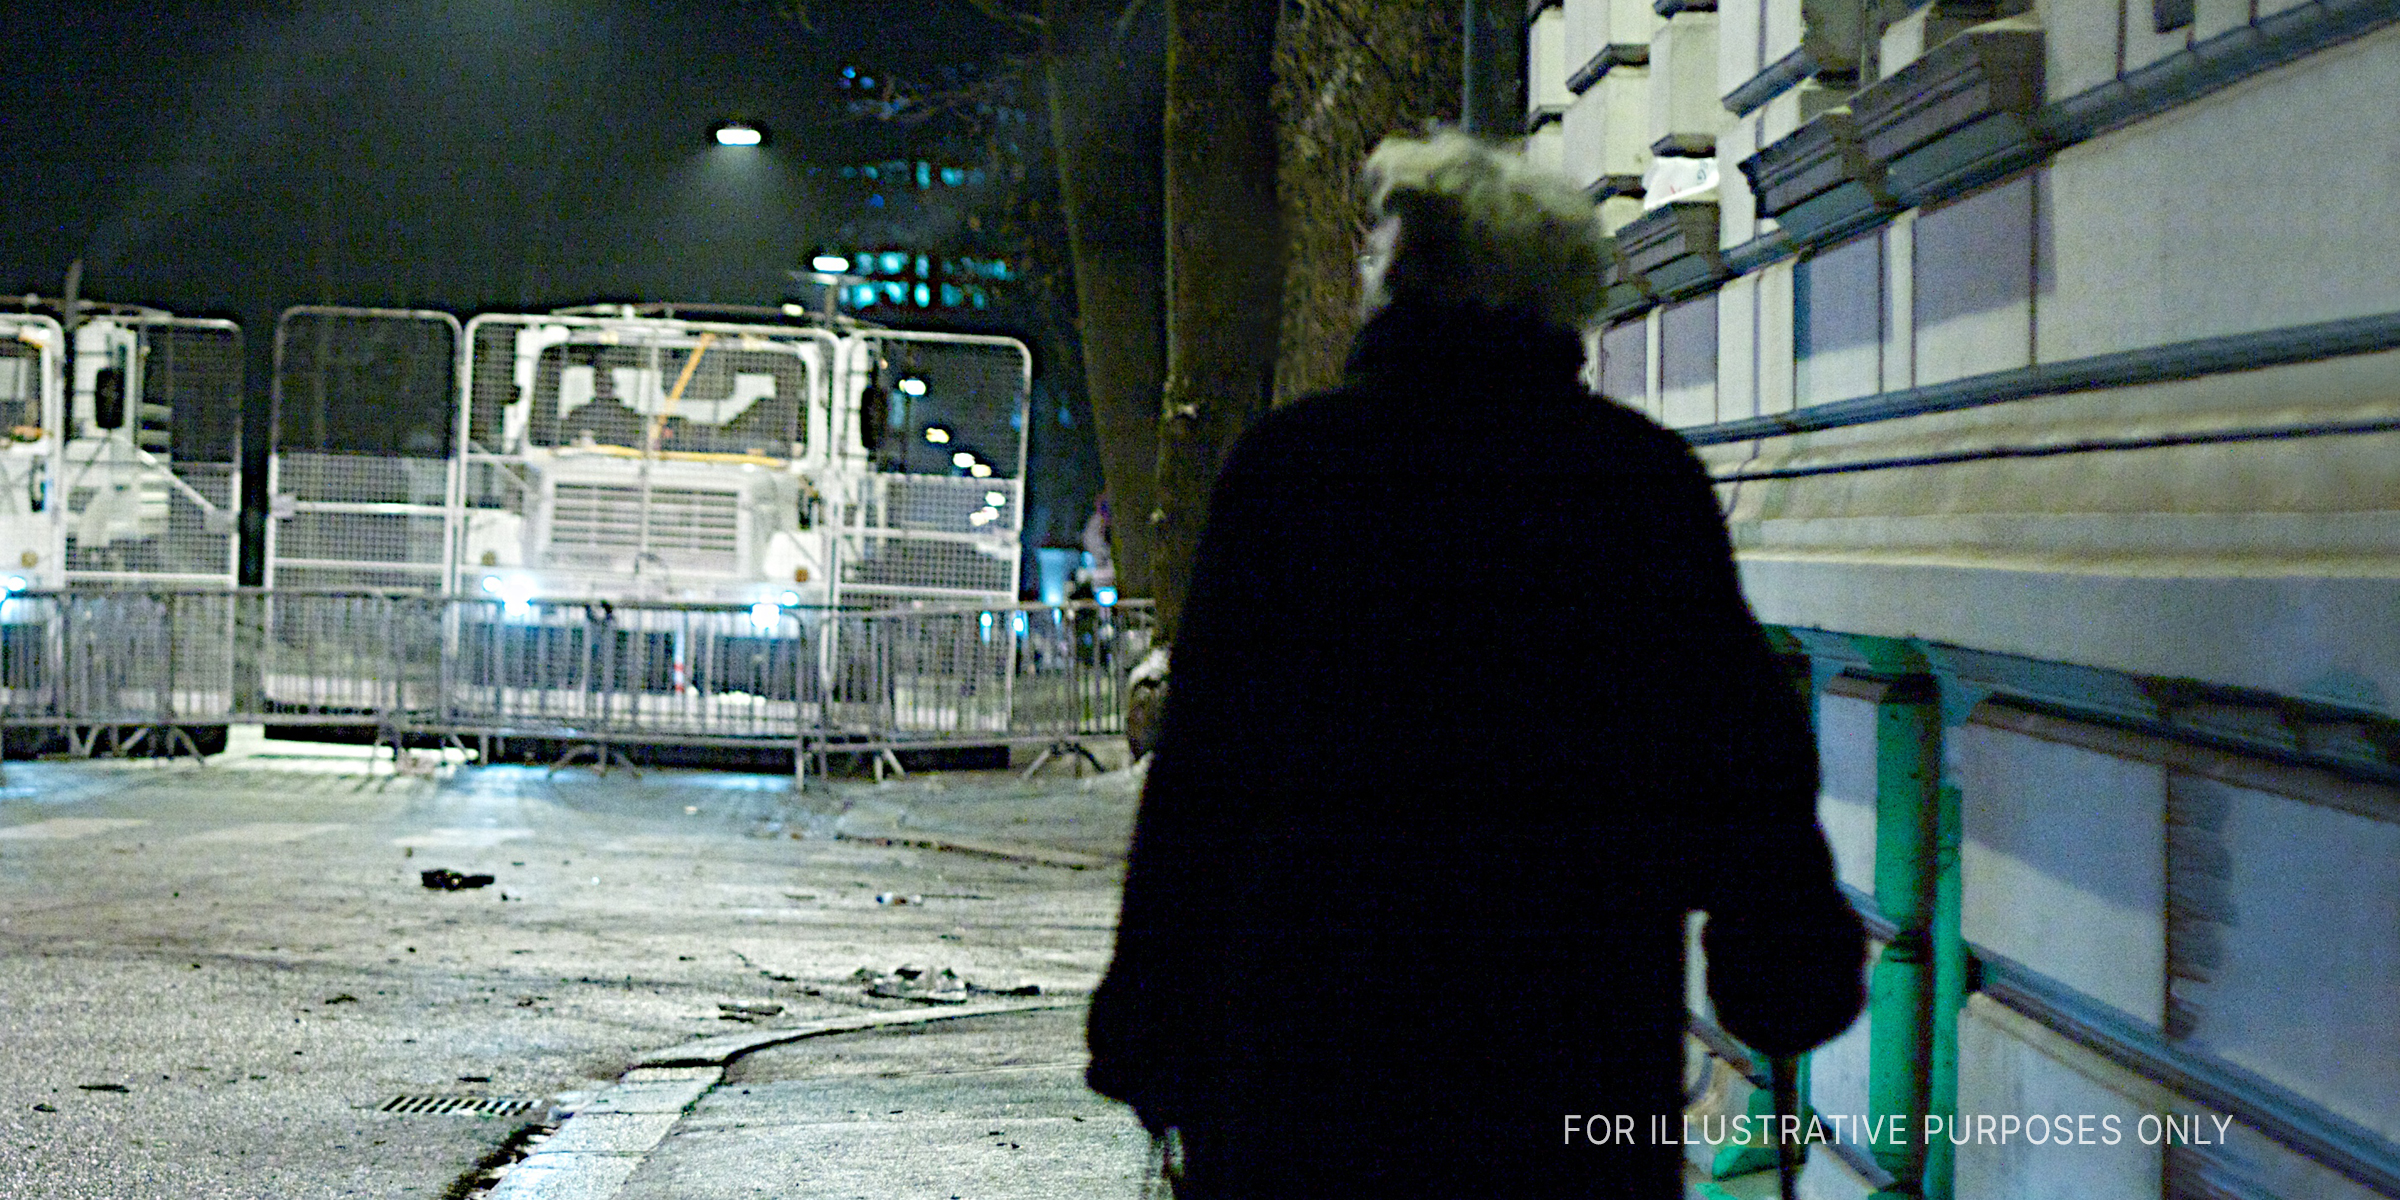 A person walking on a street at night | Source: Flickr/Egil Fujikawa Nes (CC BY 2.0)